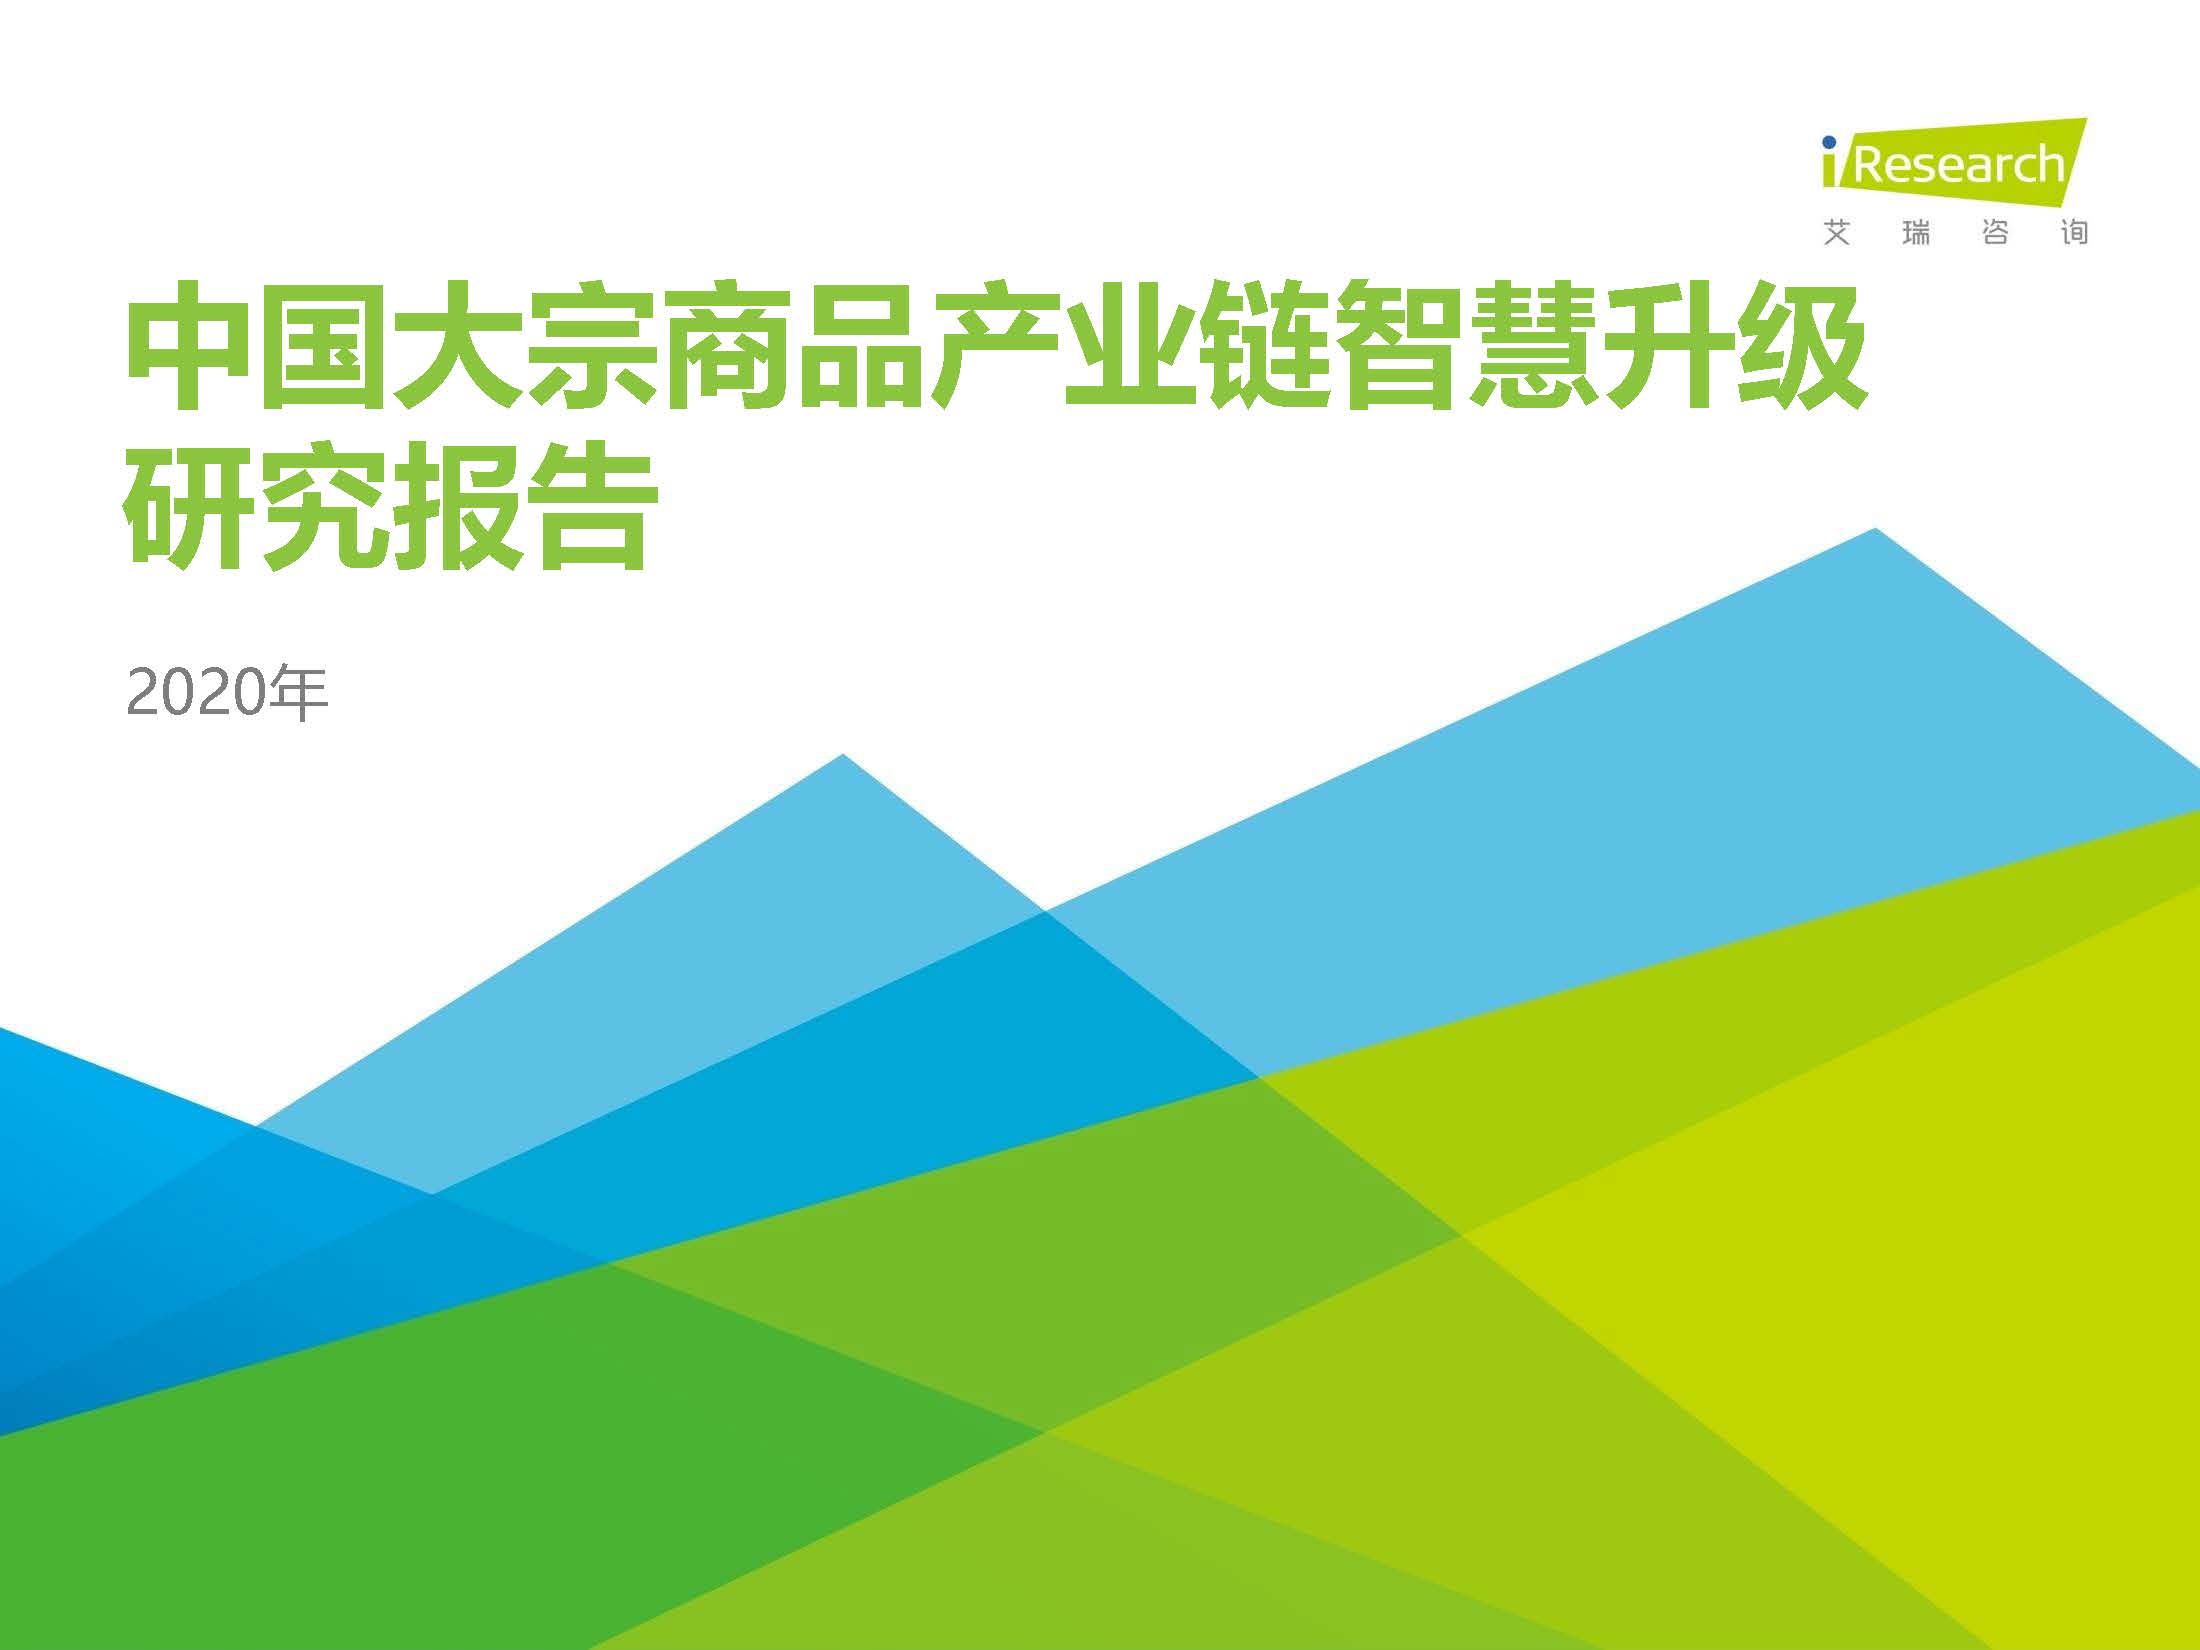 艾瑞：2020年中国大宗商品产业链智慧升级研究报告（附下载地址）